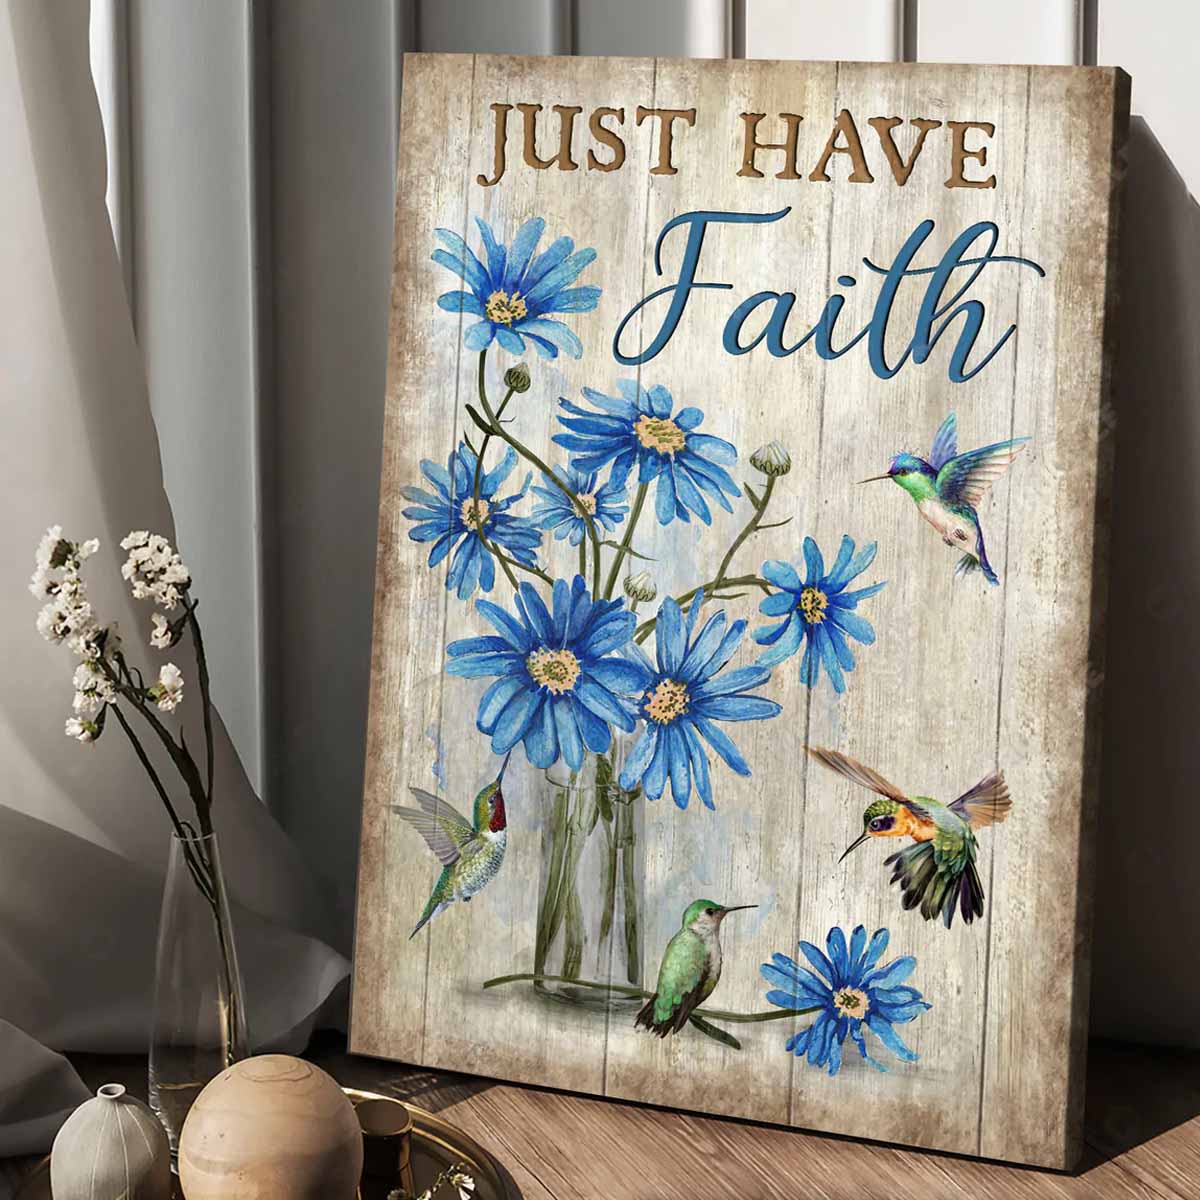 Jesus Portrait Canvas - Blue flower painting, Watercolor hummingbird, Motivational quote Portrait Canvas - Gift For Christian - Just have faith Portrait Canvas